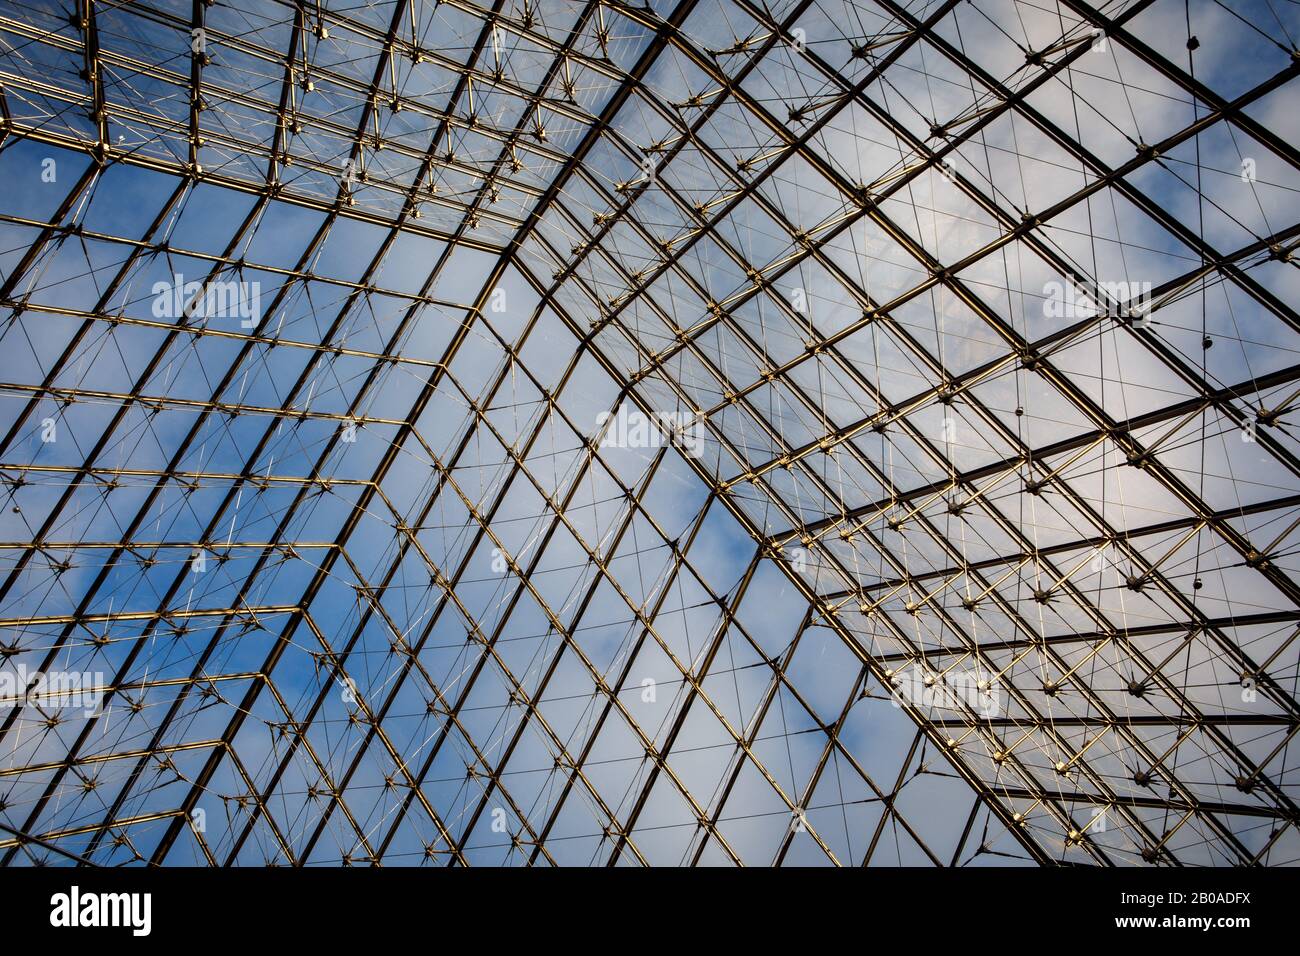 Die ikonische Glaspyramide von im Pei am Eingang zum Louvre. Stockfoto